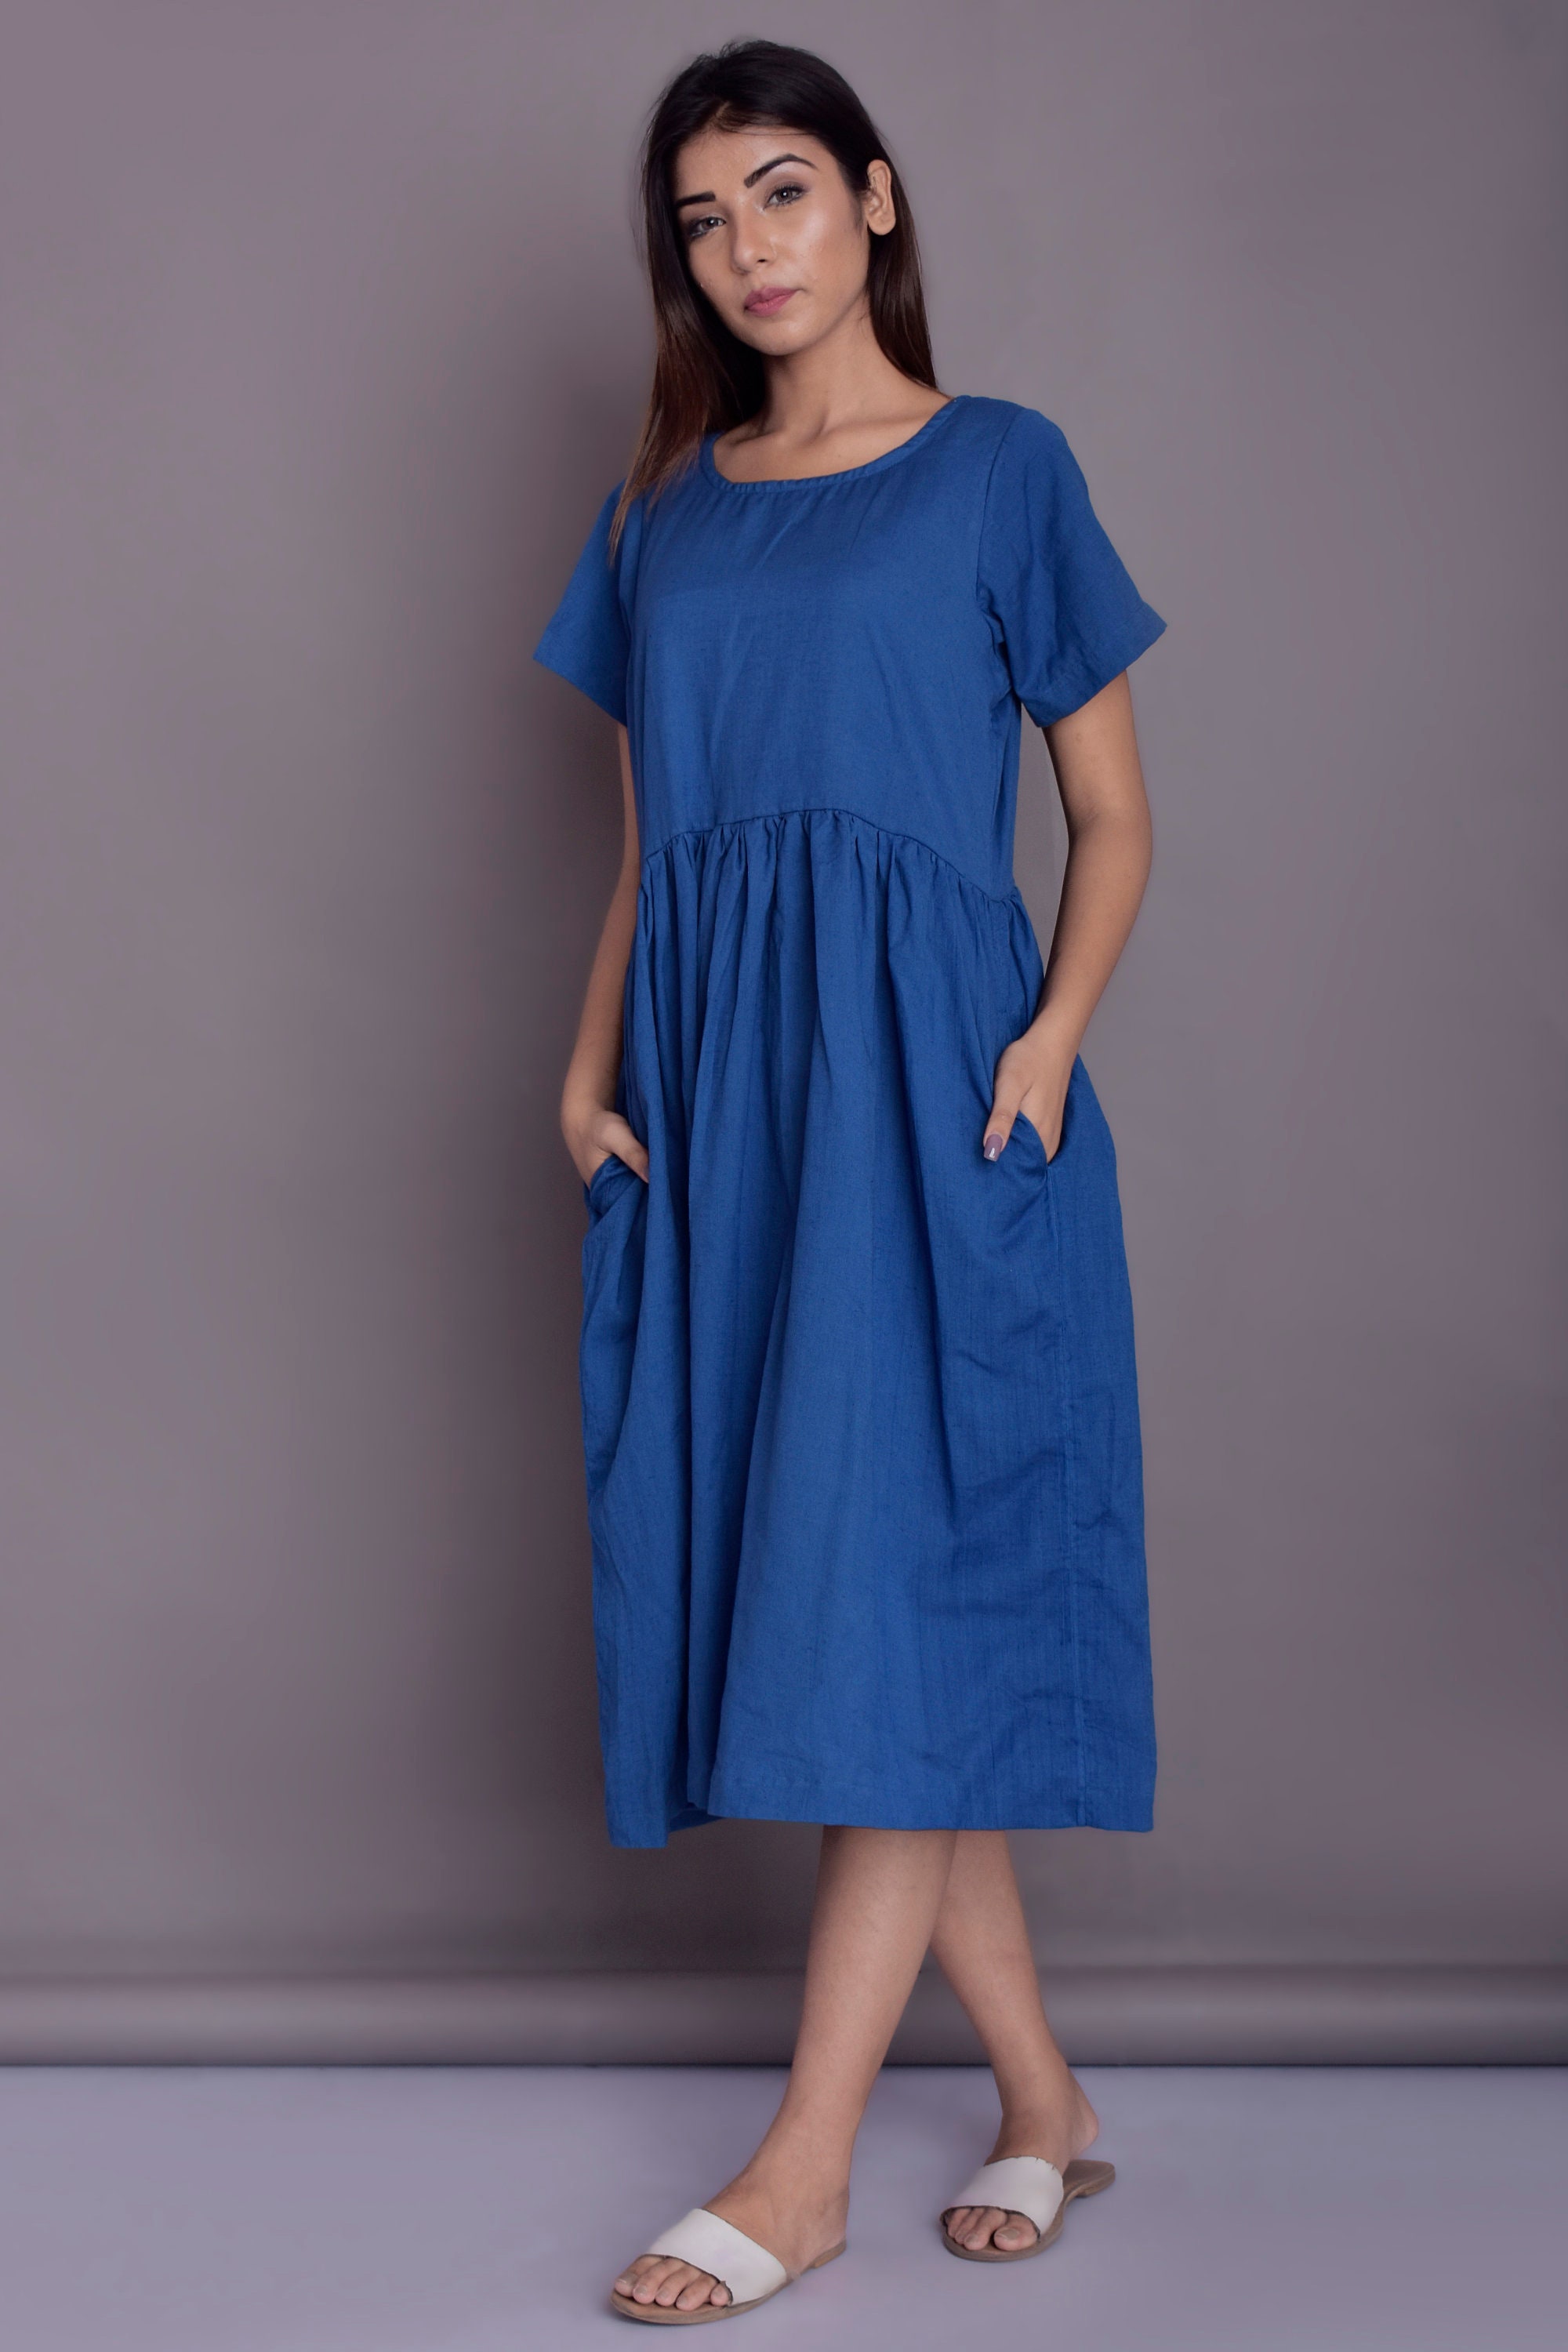 Linen Midi Dress Short Sleeved Dress Blue Linen Dress | Etsy